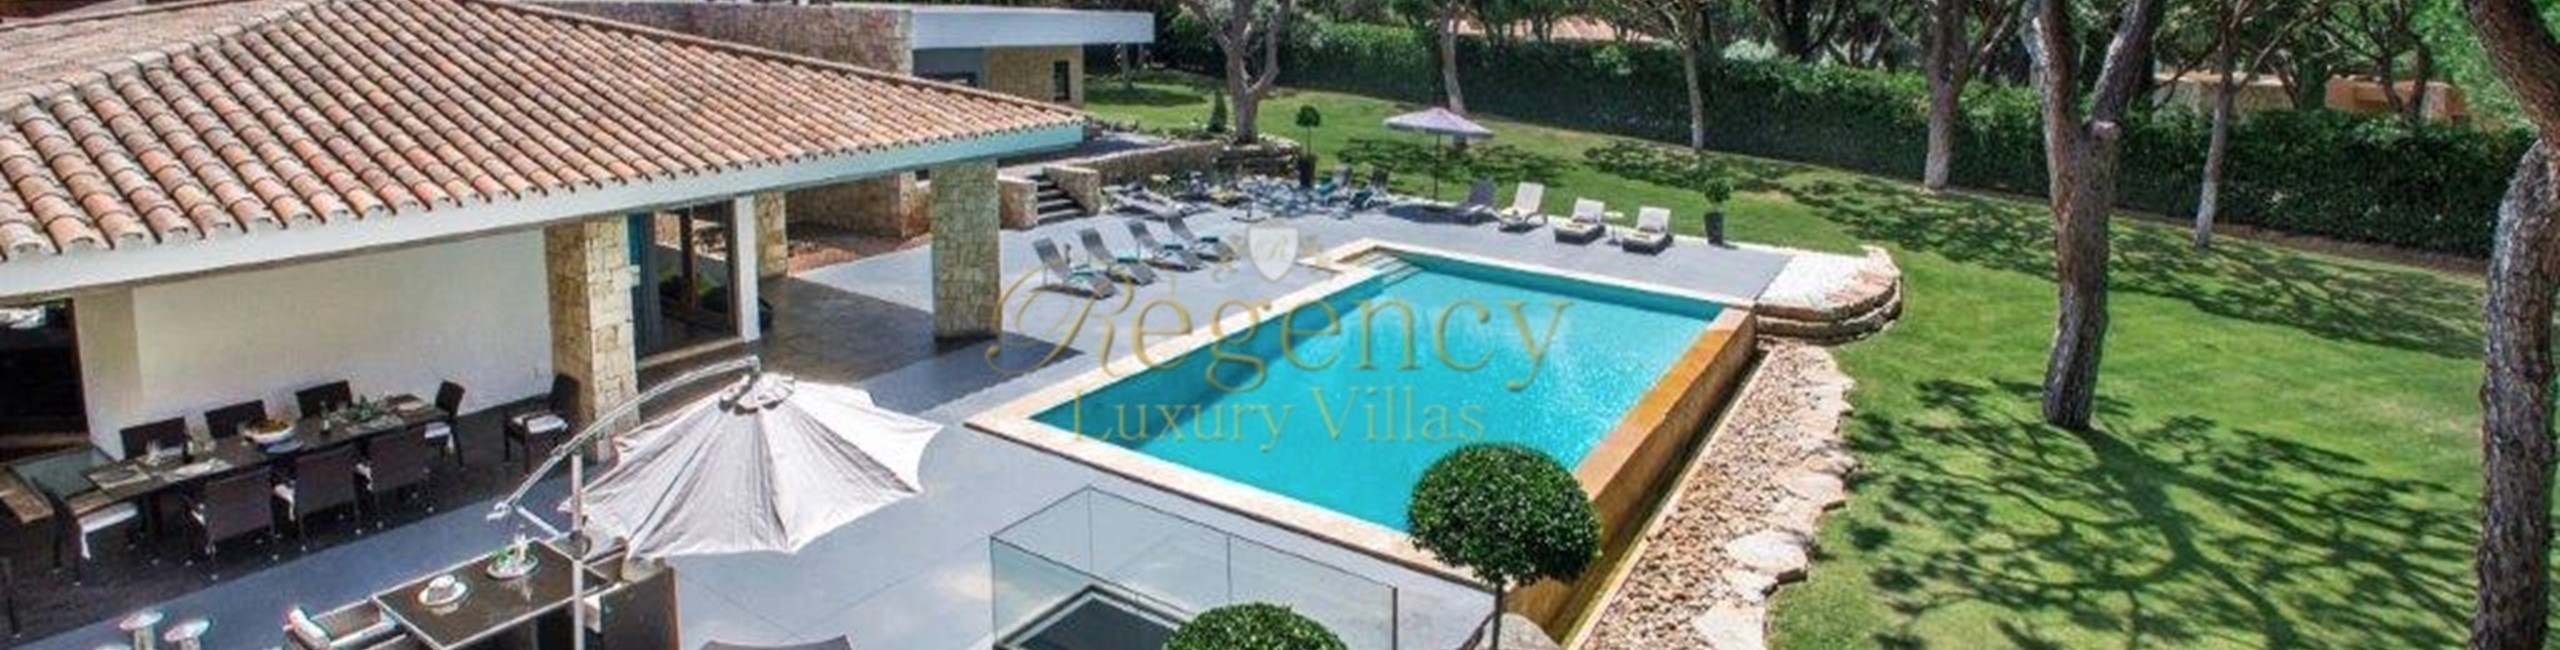 Algarve 9 Bedroom Villa To Rent Near Golf